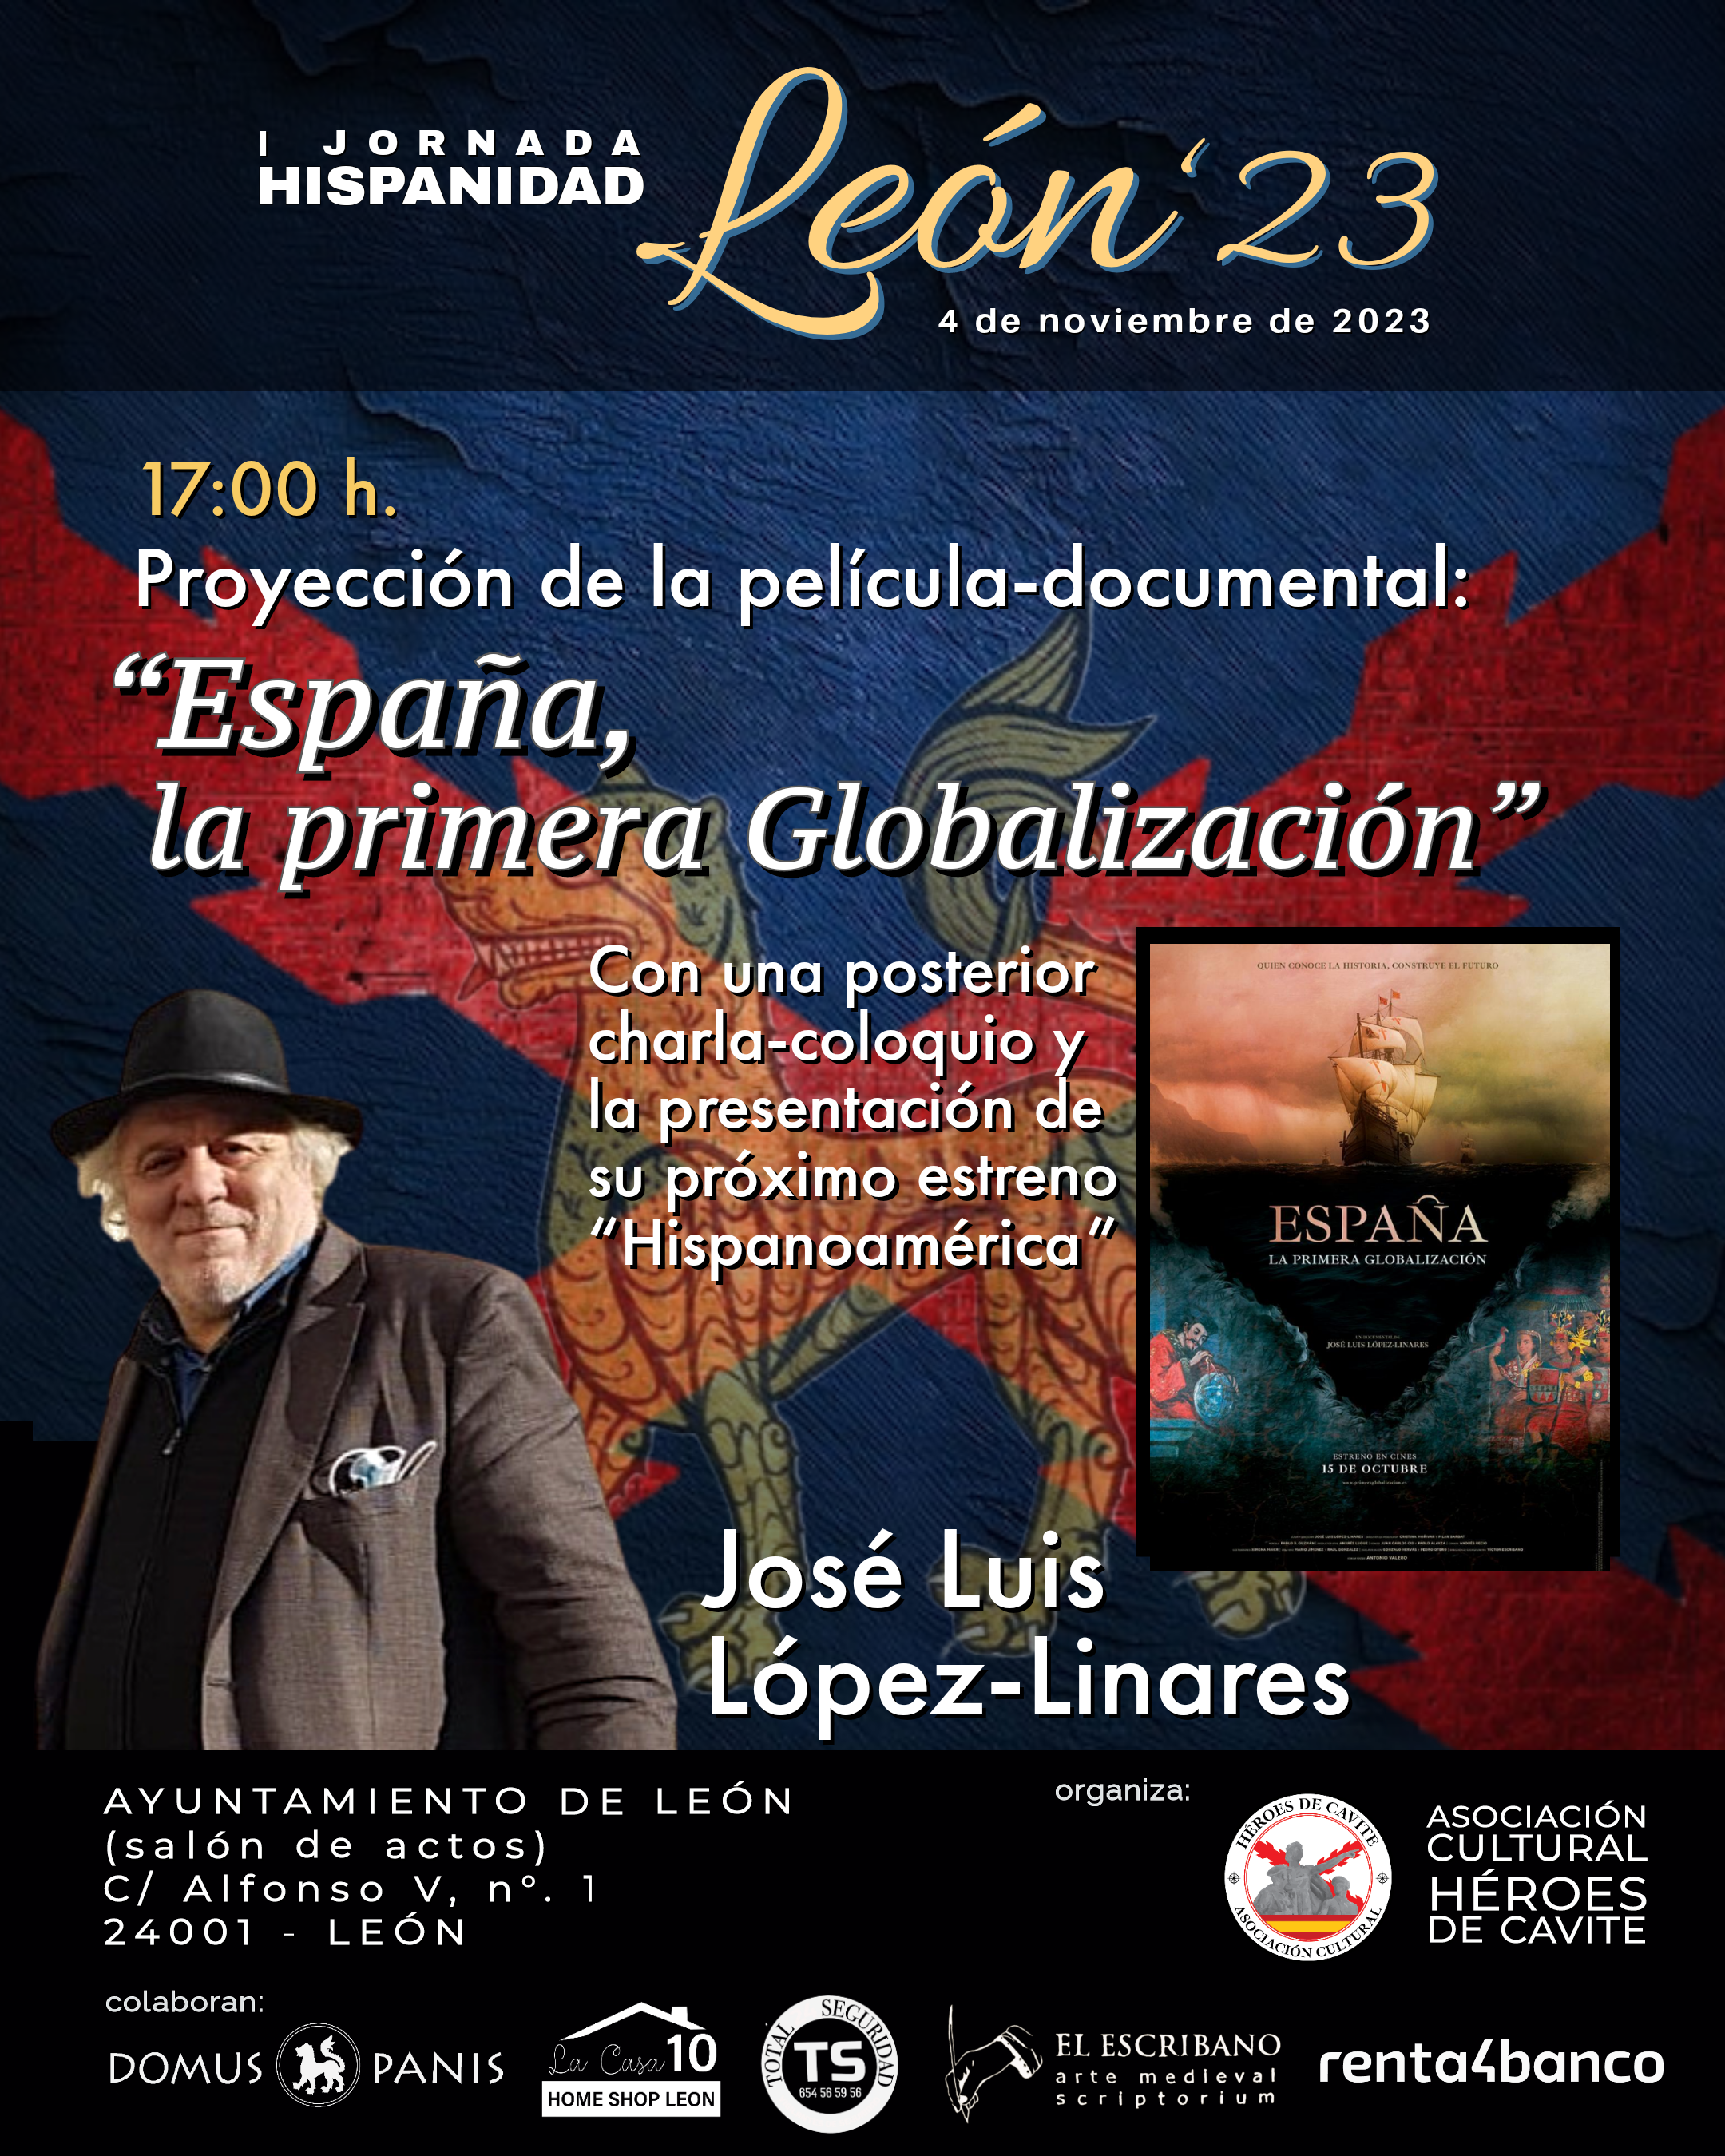 Cartel promocional de la proyección de la película "España. La primera globalización" dirigida por José Luis López-Linares. El evento se celebra en León, España, y el cartel incluye detalles logísticos y de contacto.